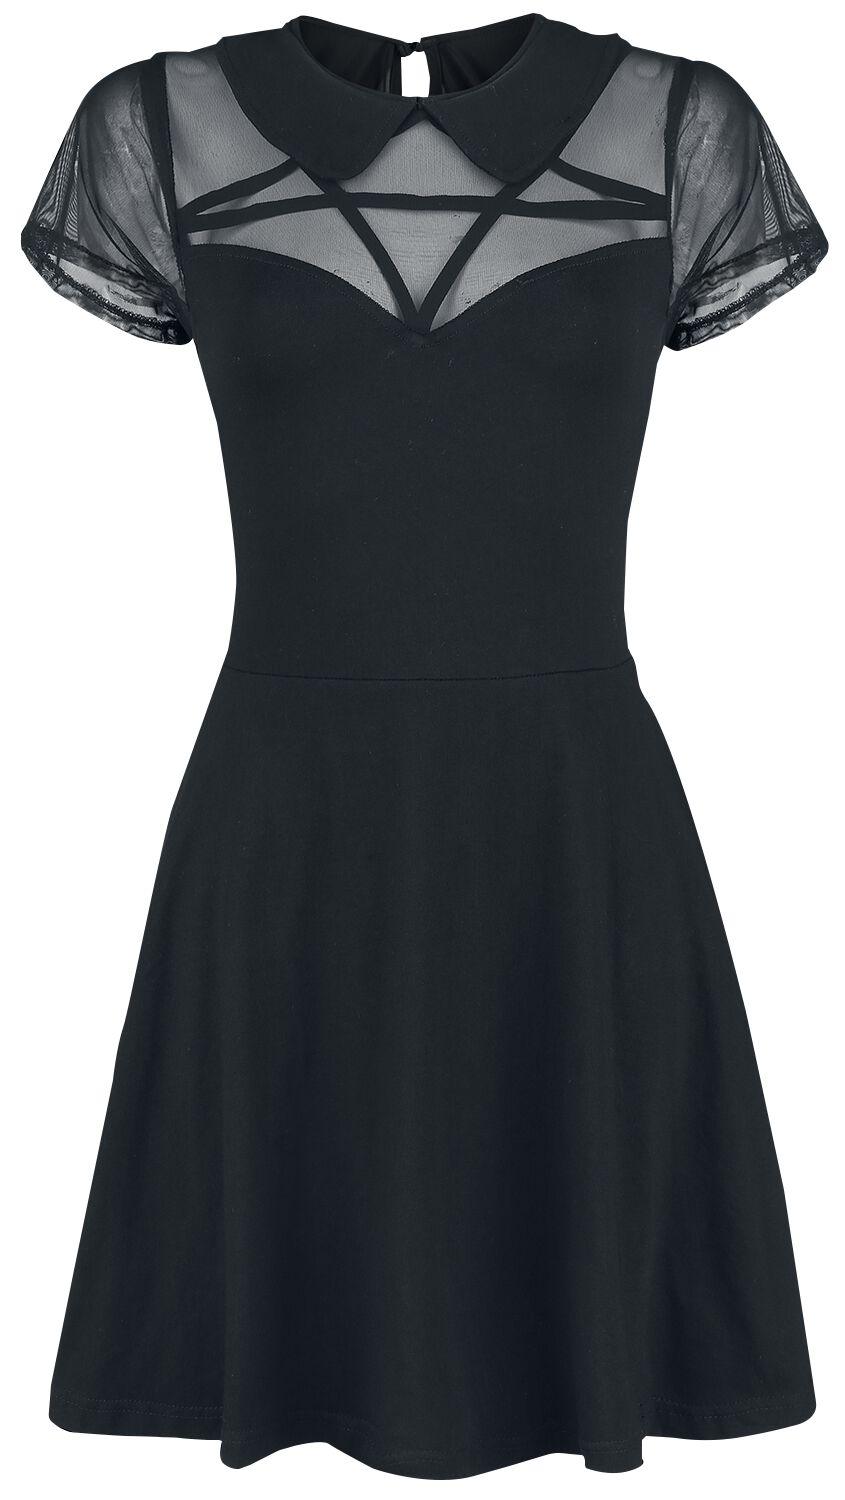 Heartless - Gothic Kurzes Kleid - Hex Wednesday Dress - S bis XL - für Damen - Größe M - schwarz